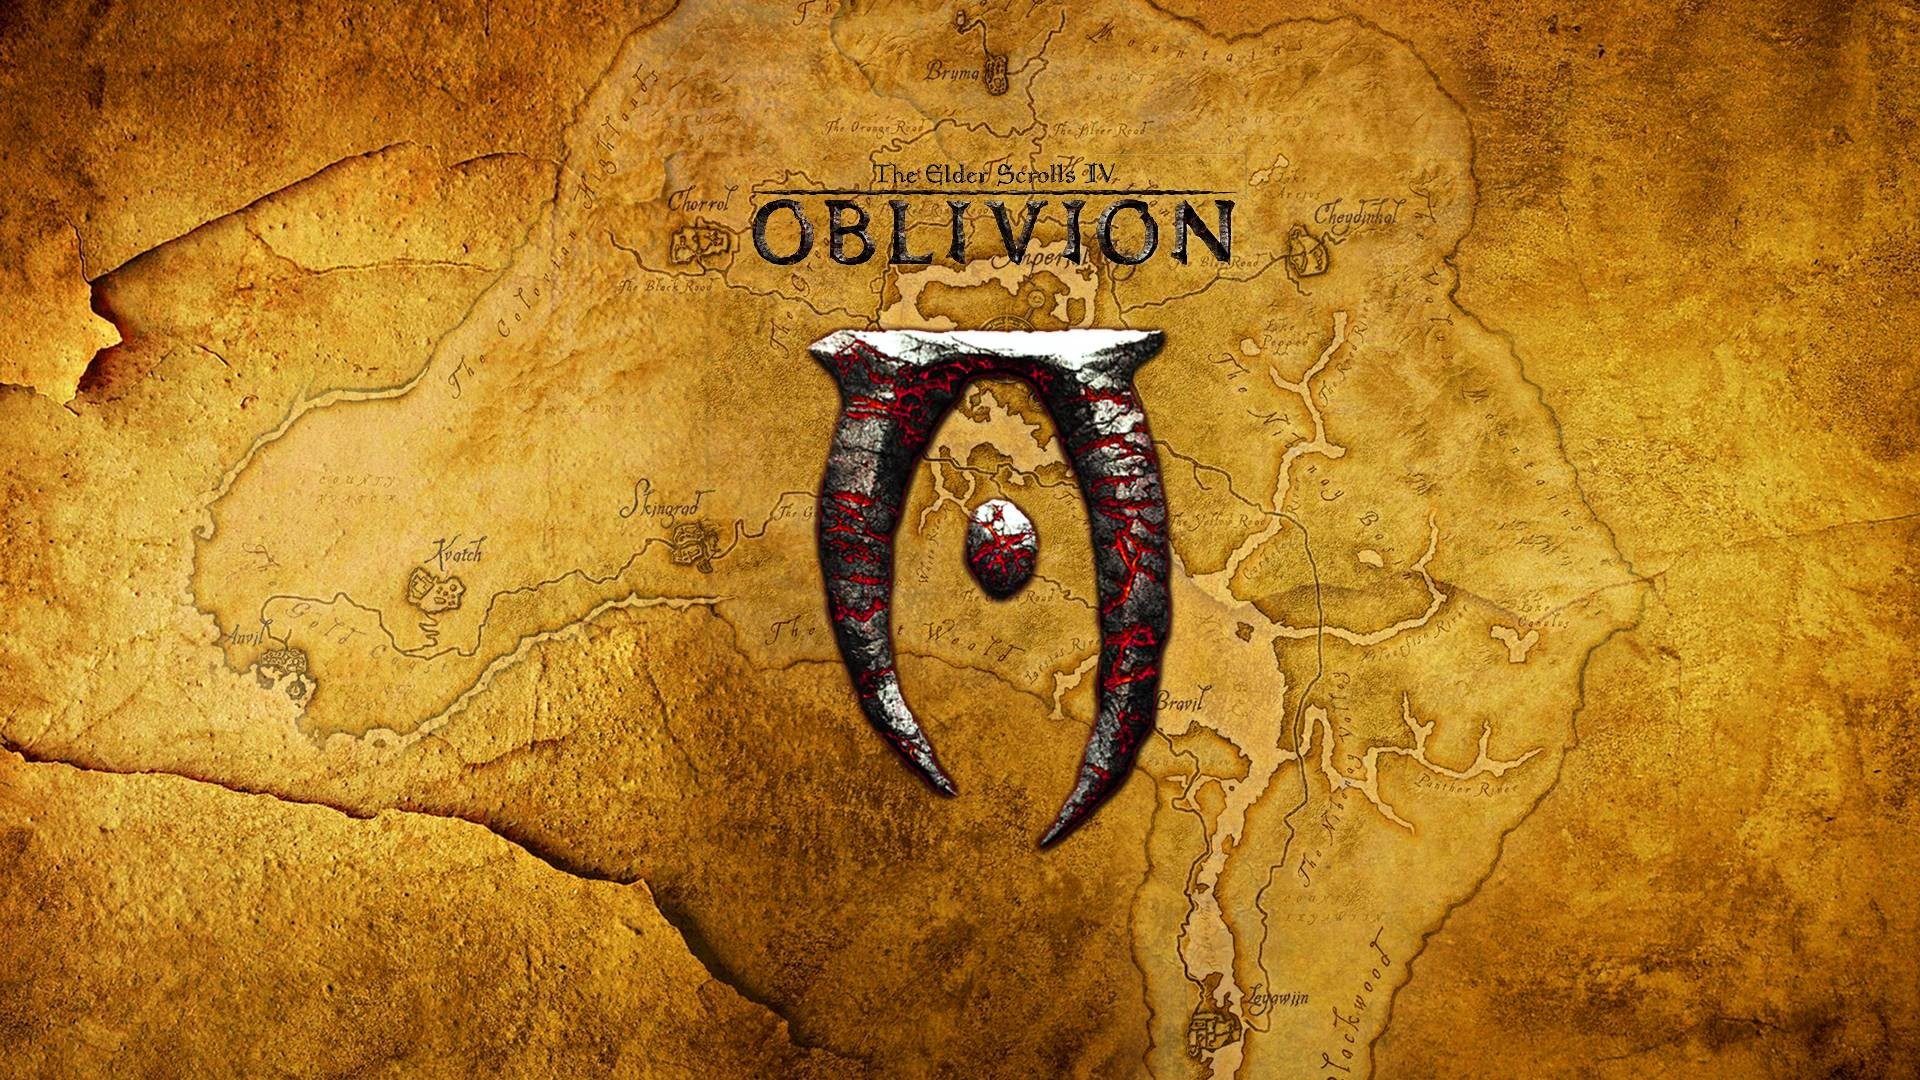 the elder scrolls iv oblivion pc download